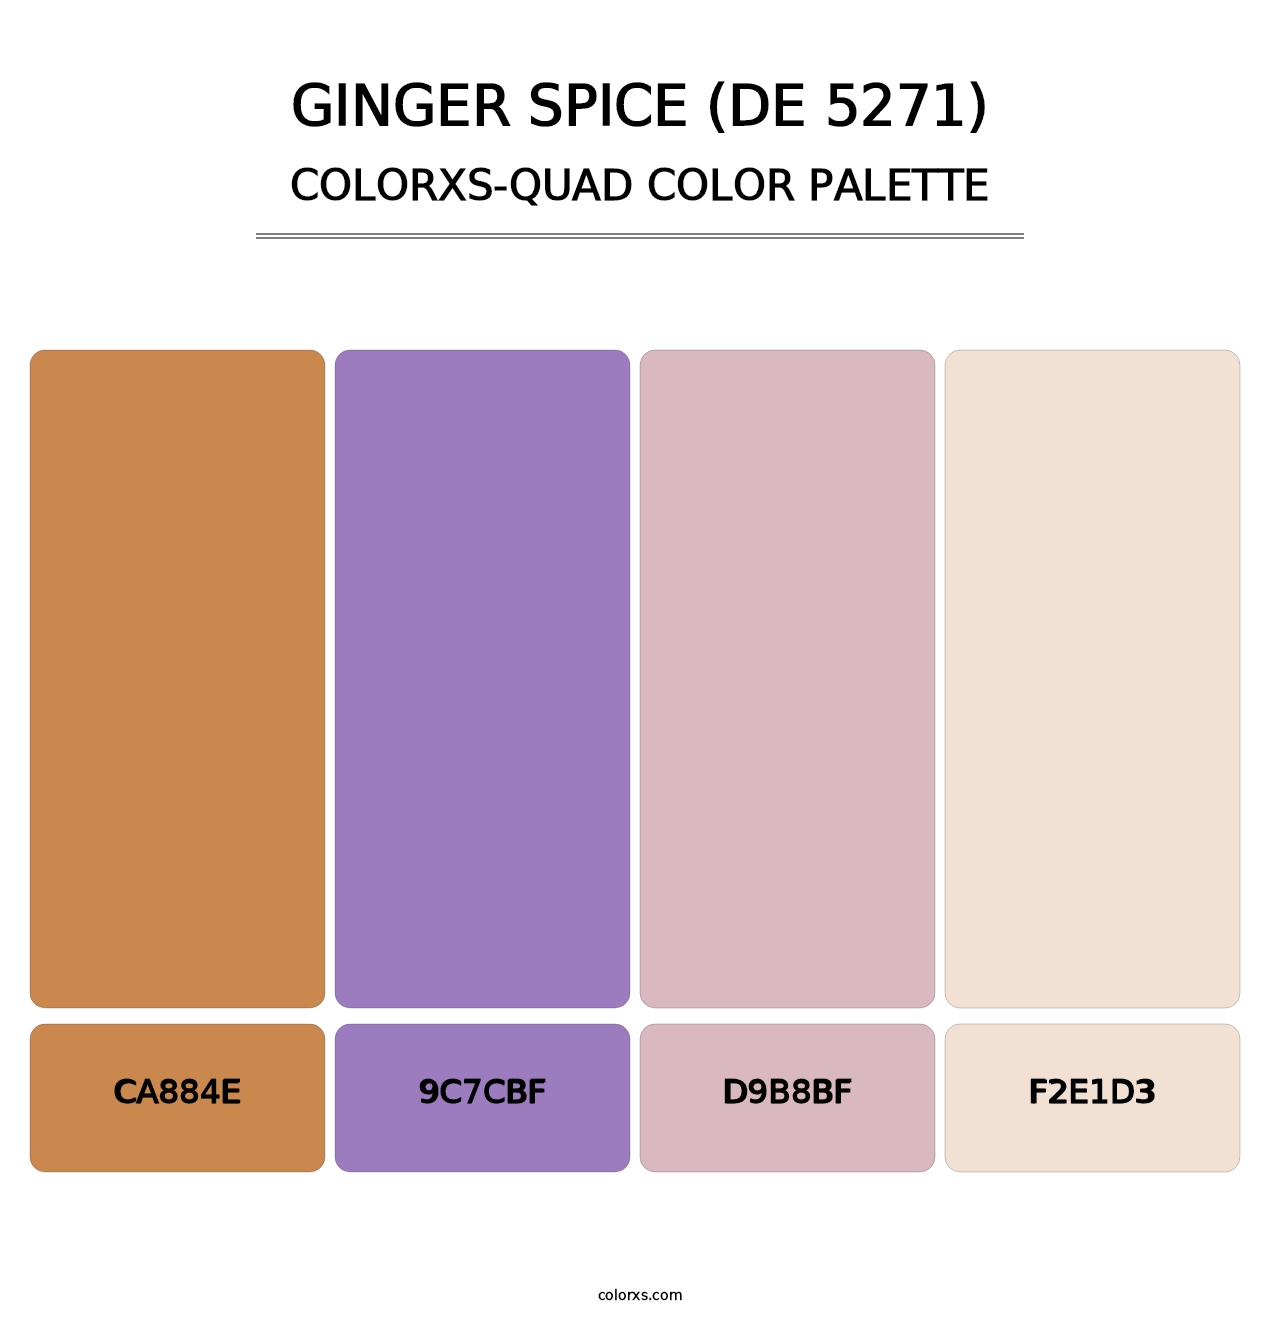 Ginger Spice (DE 5271) - Colorxs Quad Palette